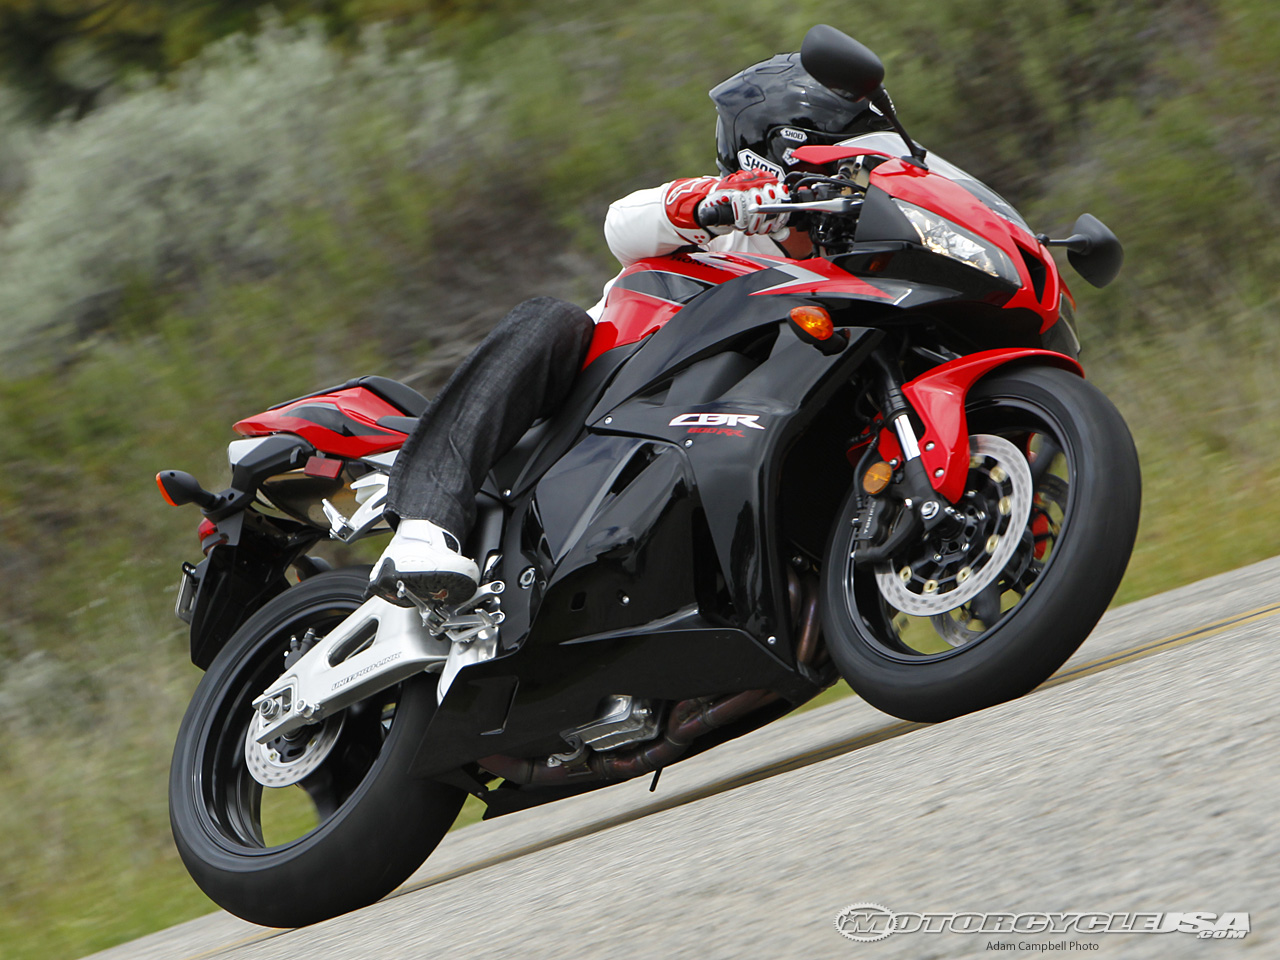 款本田CBR600RR摩托车图片3